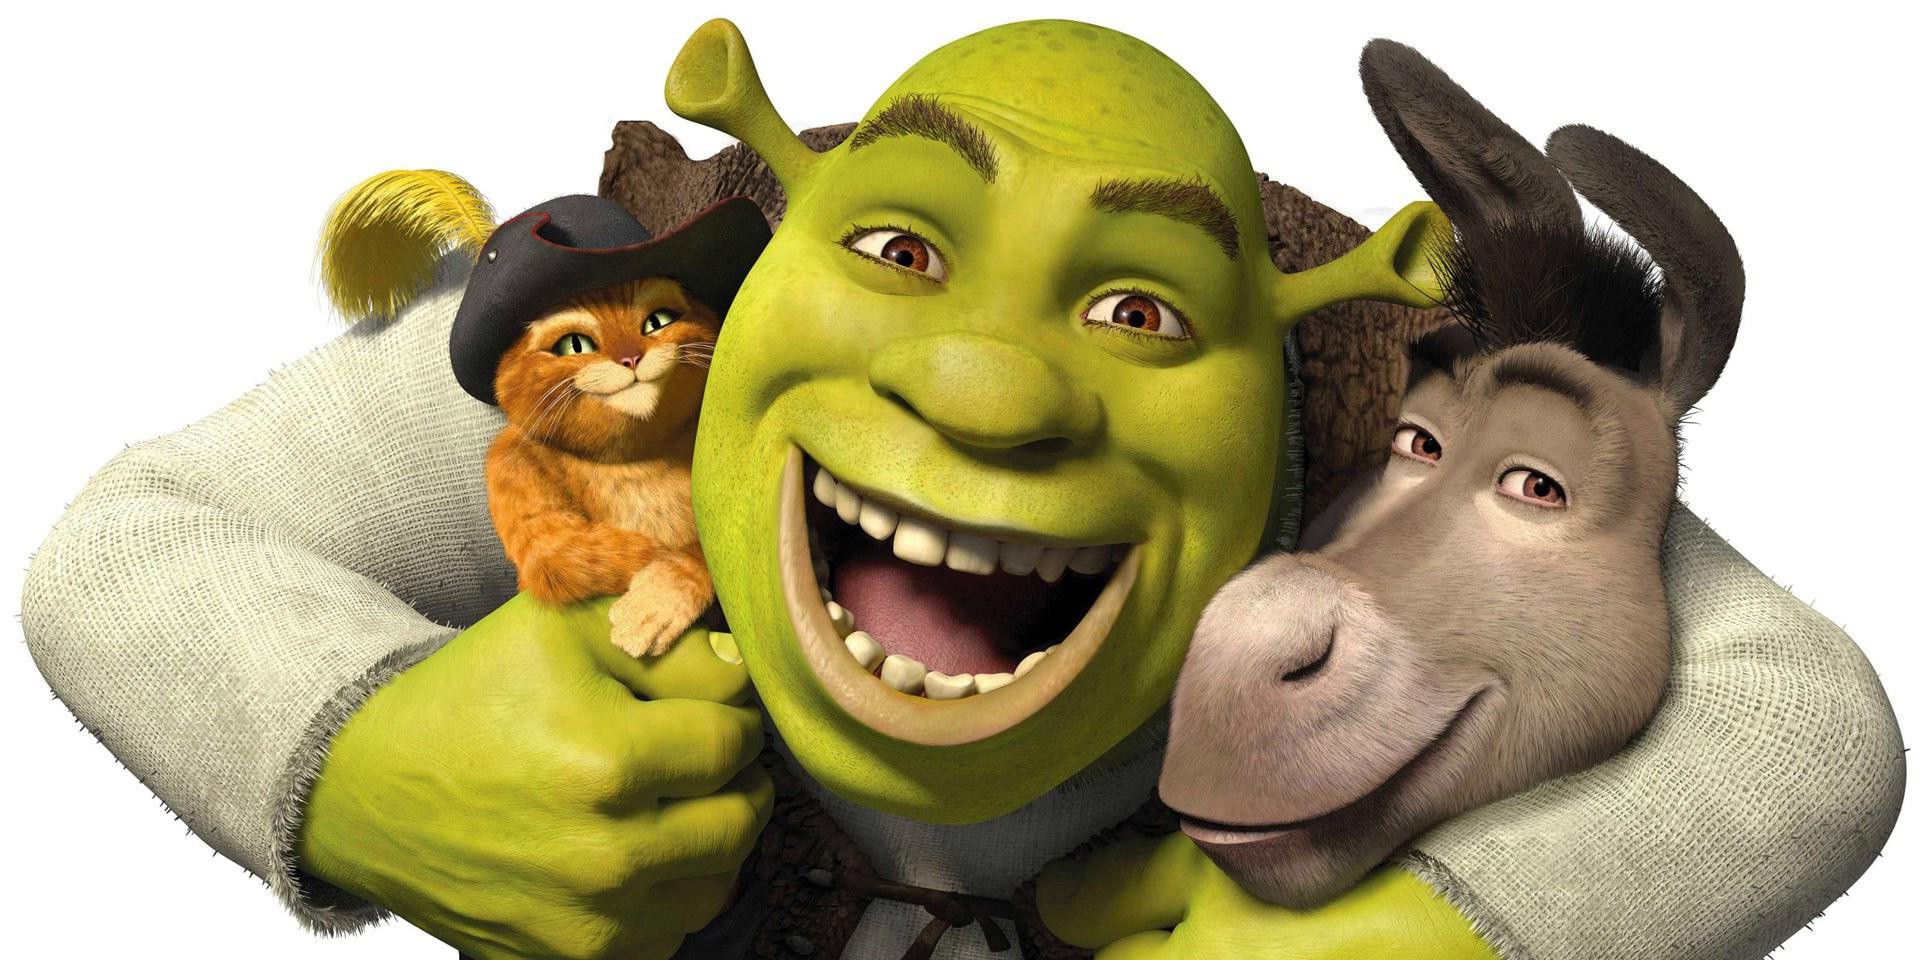 Shrek 5 release